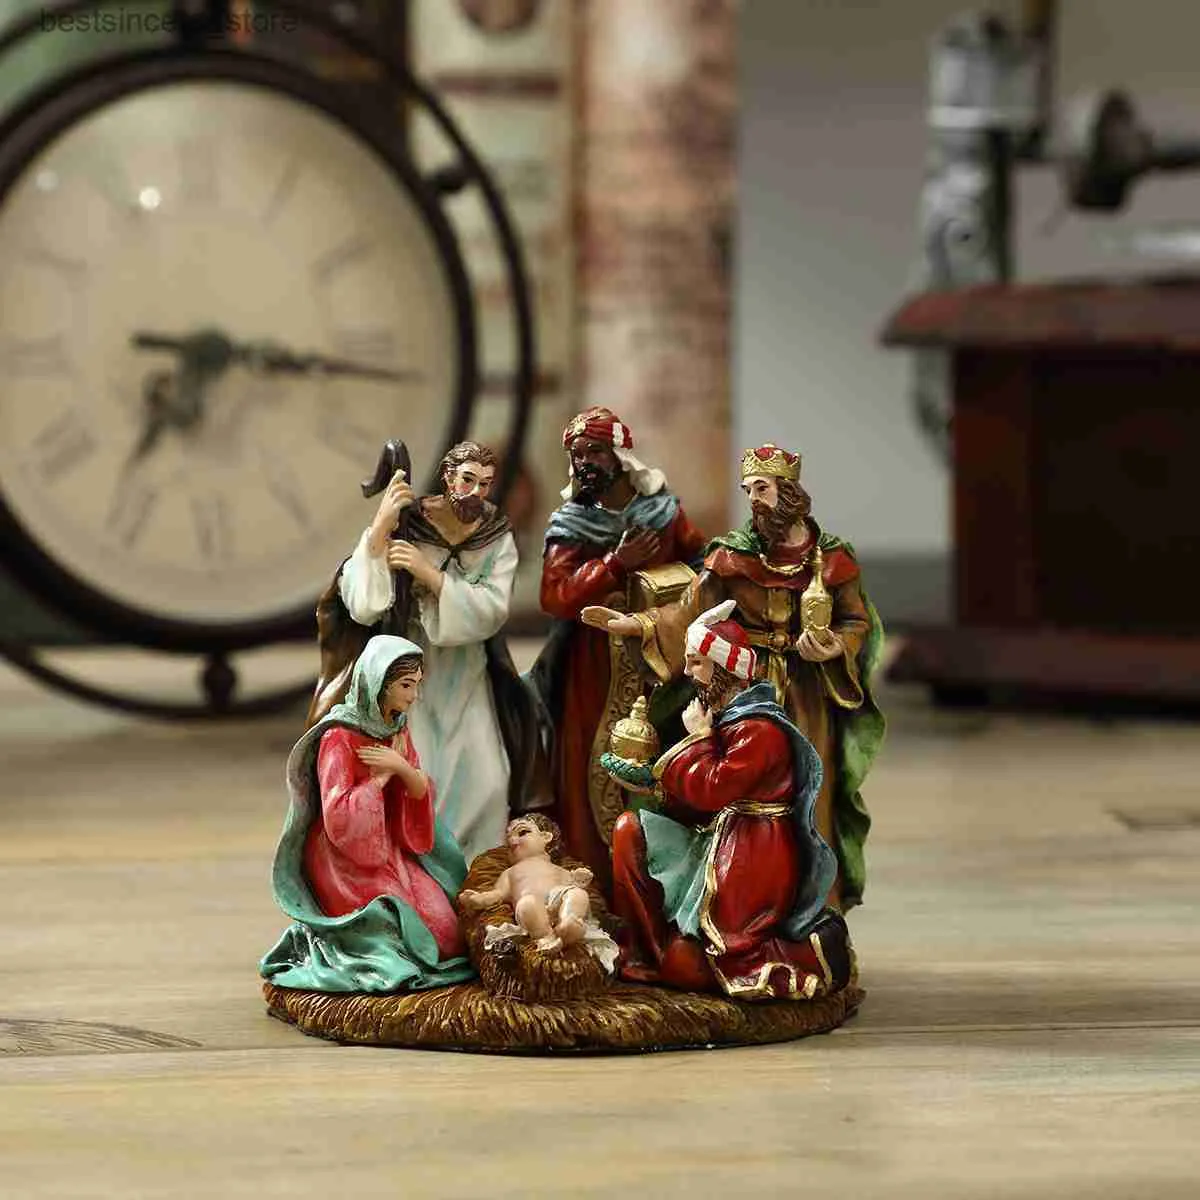 Ensemble de figurines de scène de la Nativité,ensemble de crèche